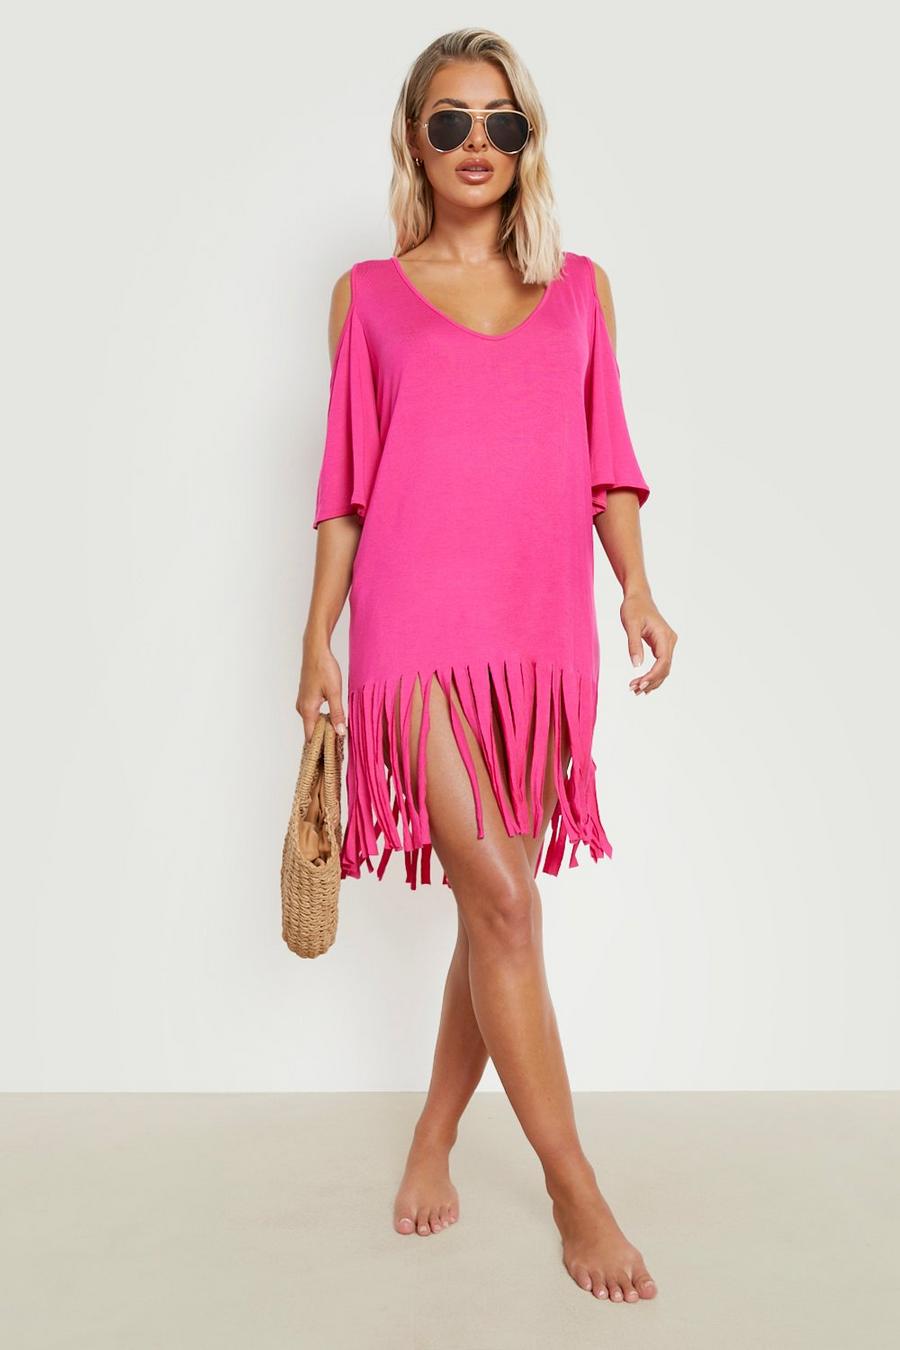 Schulterfreies Cut-Out Strandkleid mit Quasten, Hot pink